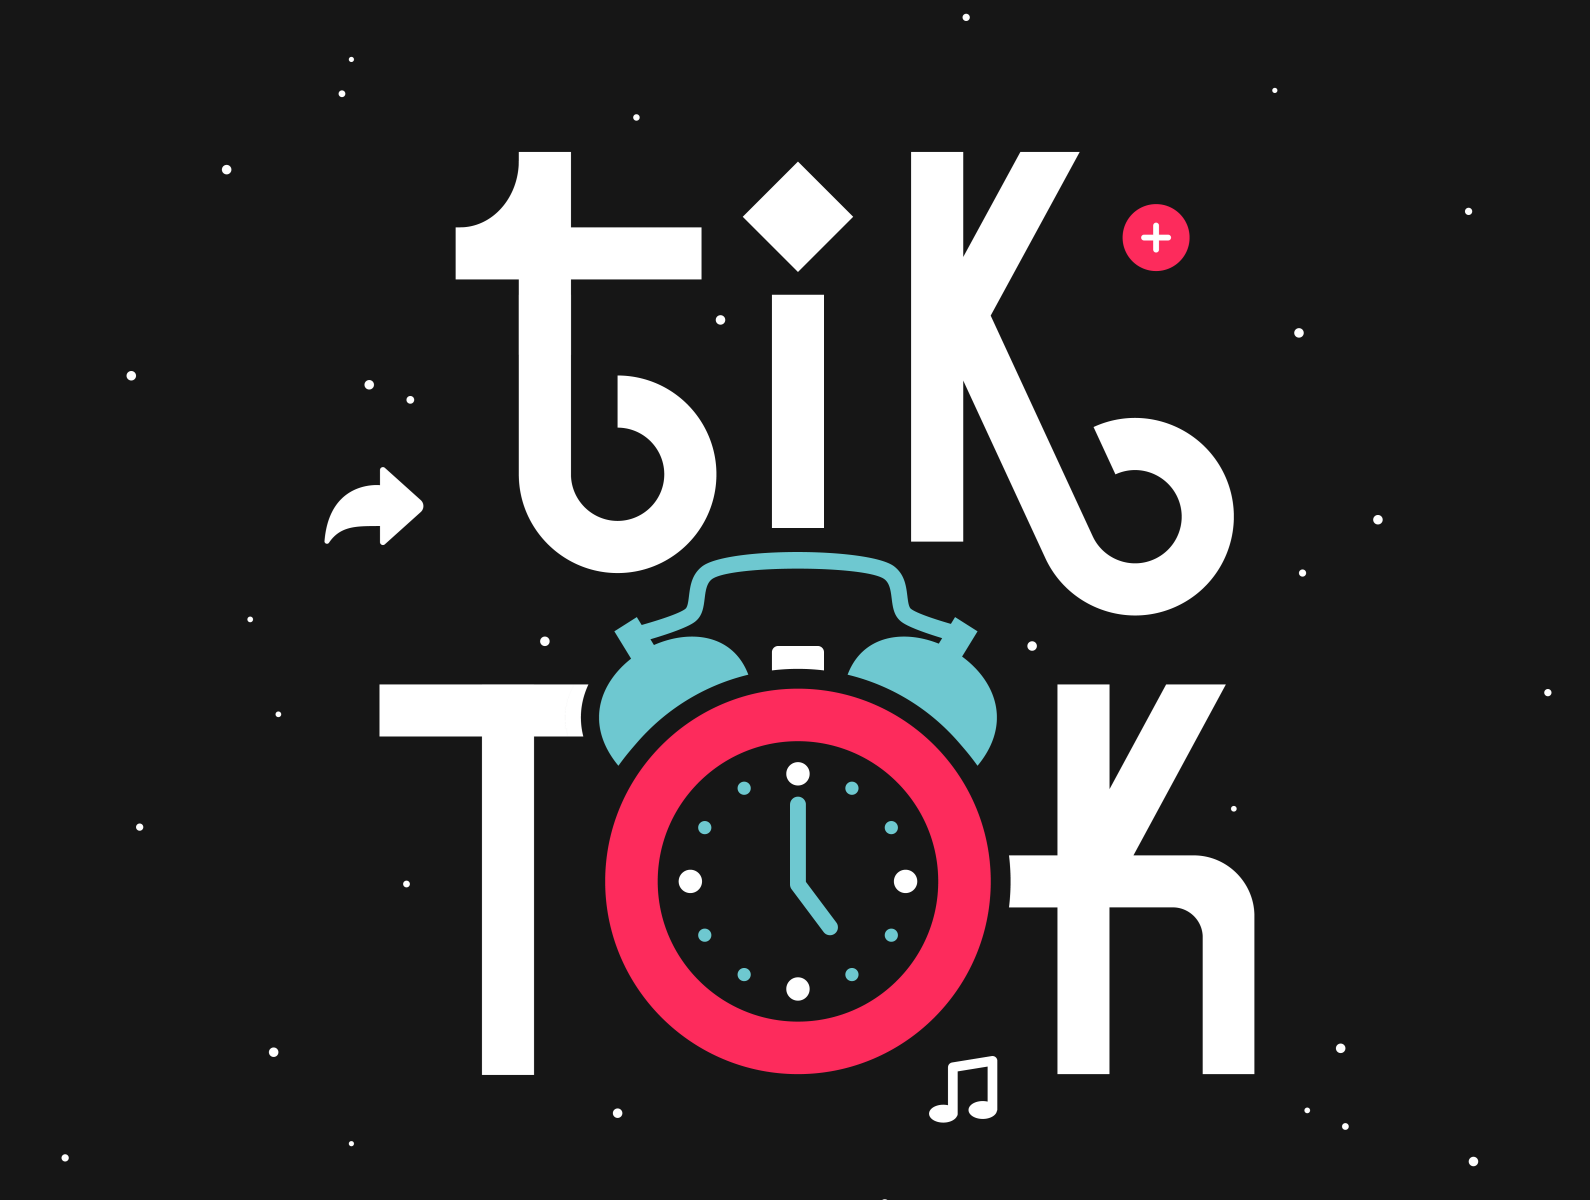 TikTok by Matt Erickson on Dribbble